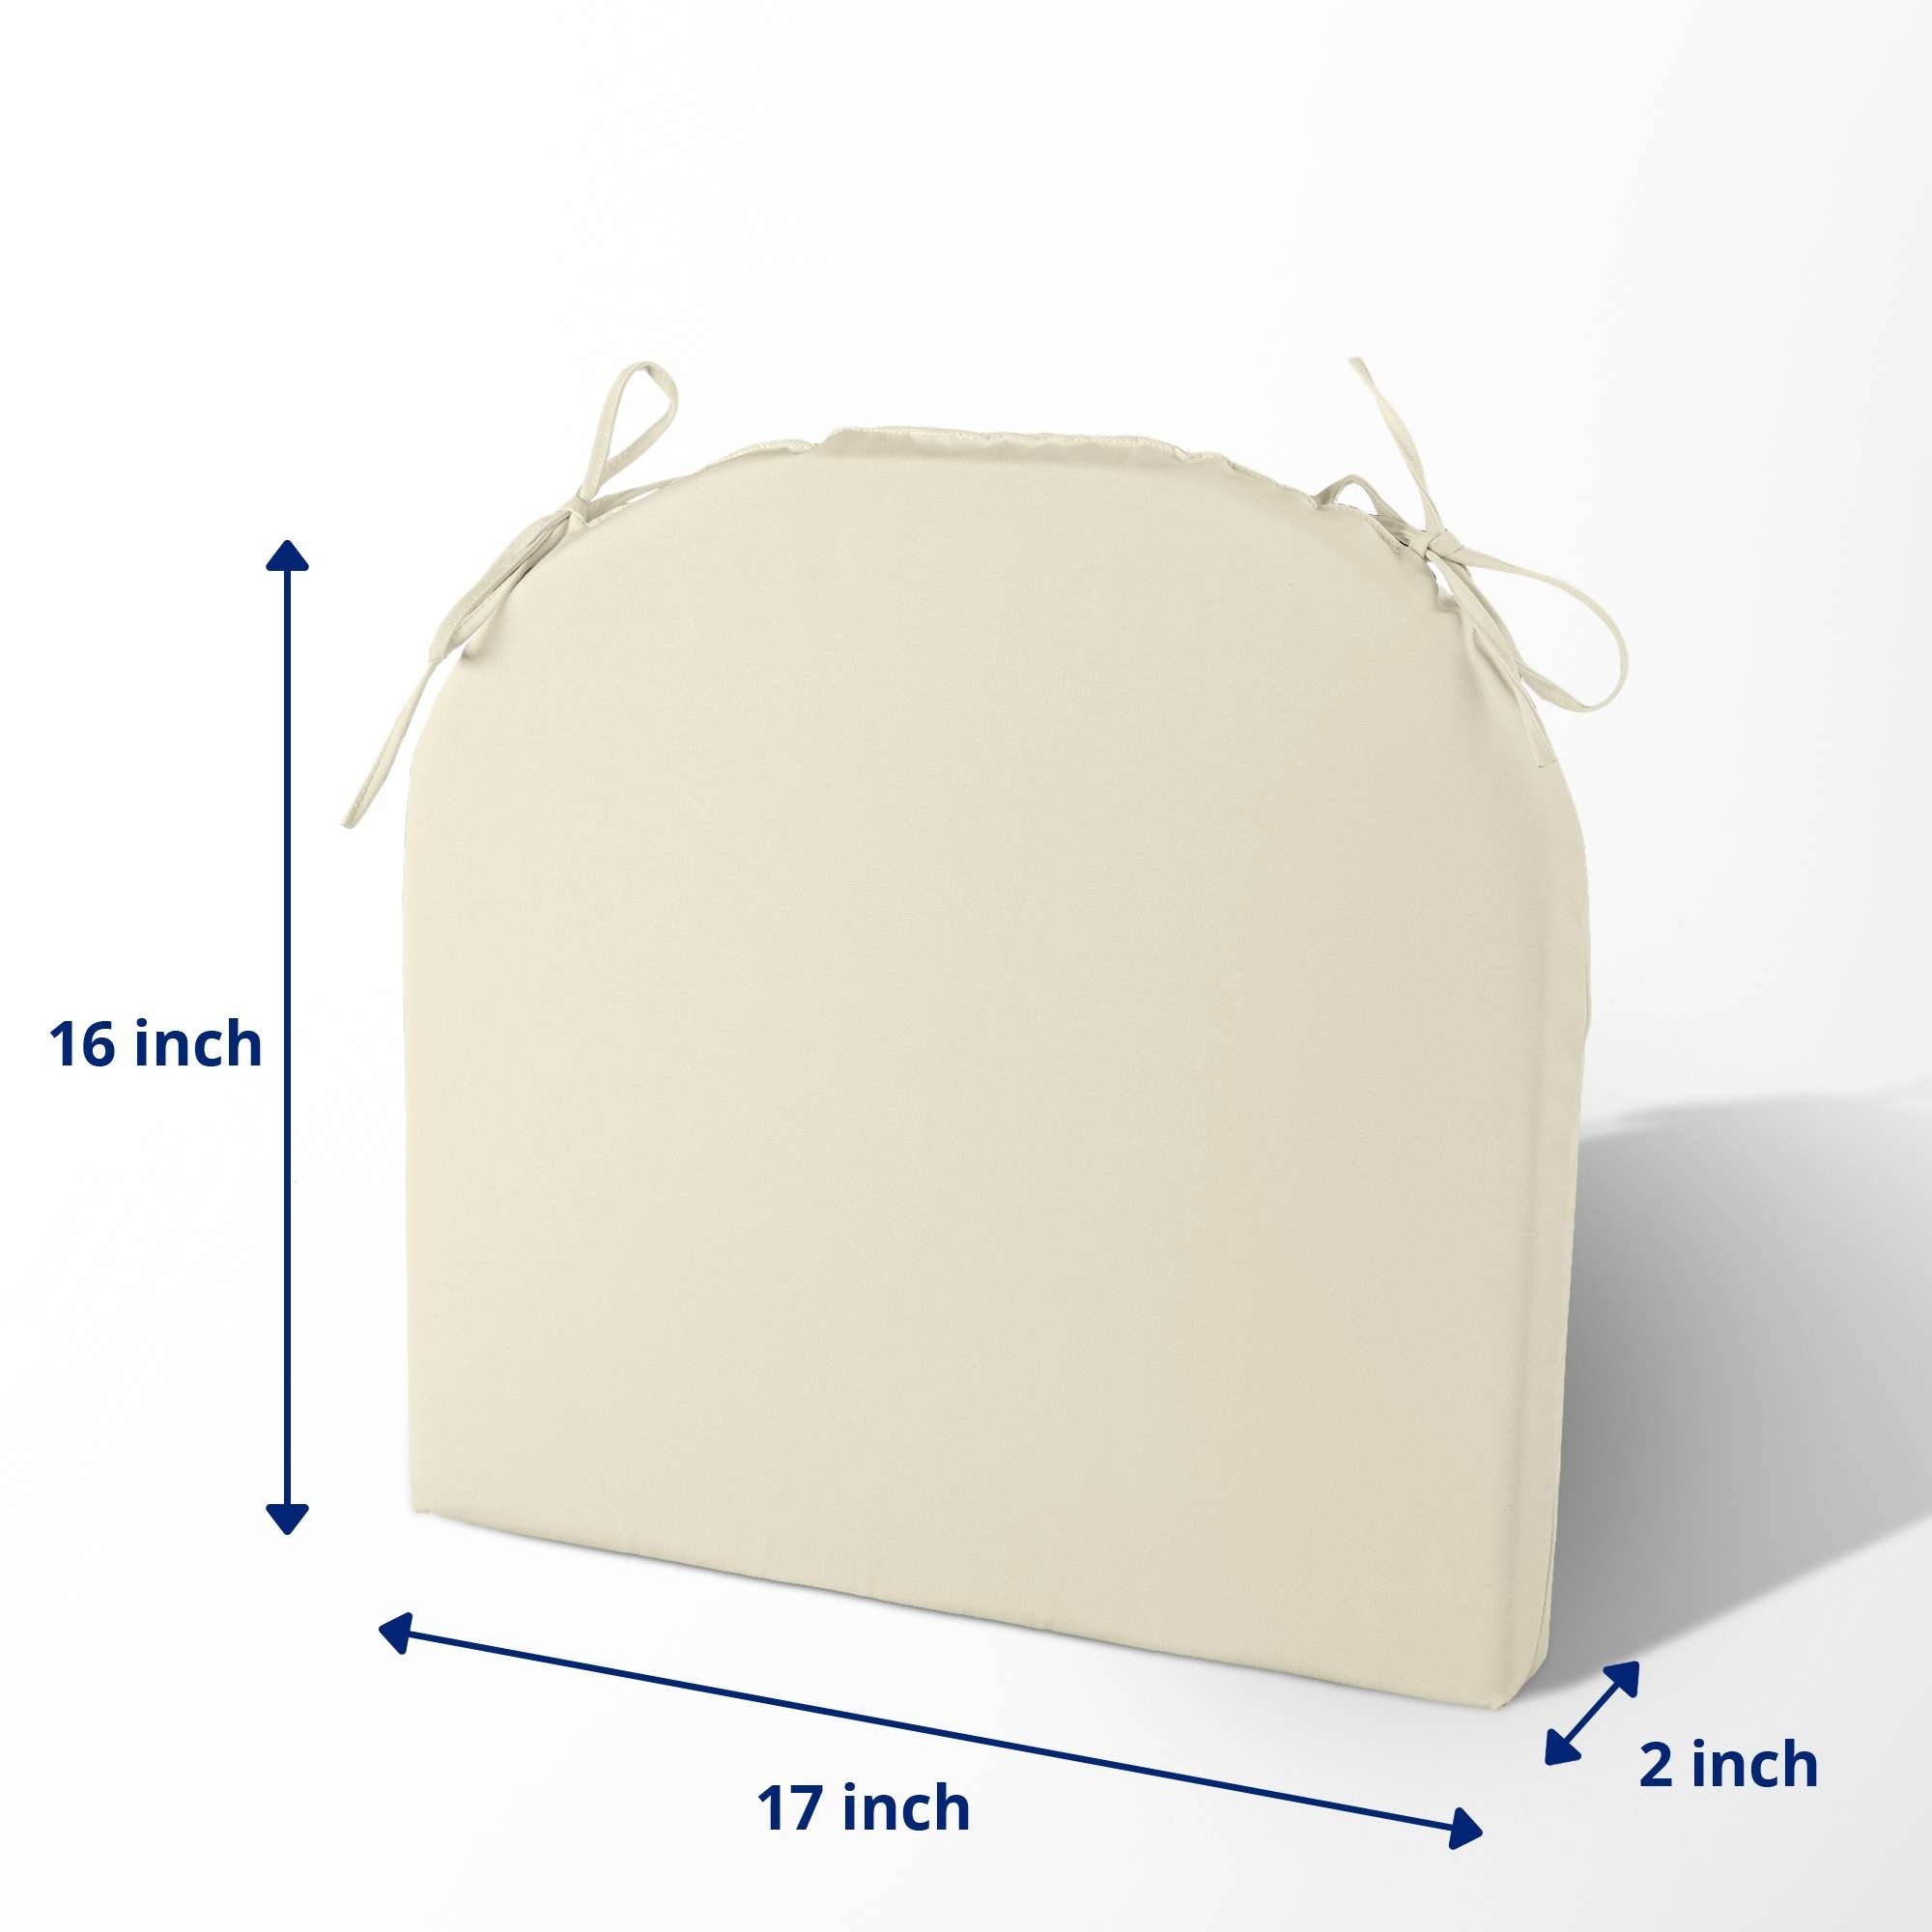 4 Pack Waterproof Ourdoor Seat Cushions High Density Foam Chair Pads With Ties - Beige, Round Corner